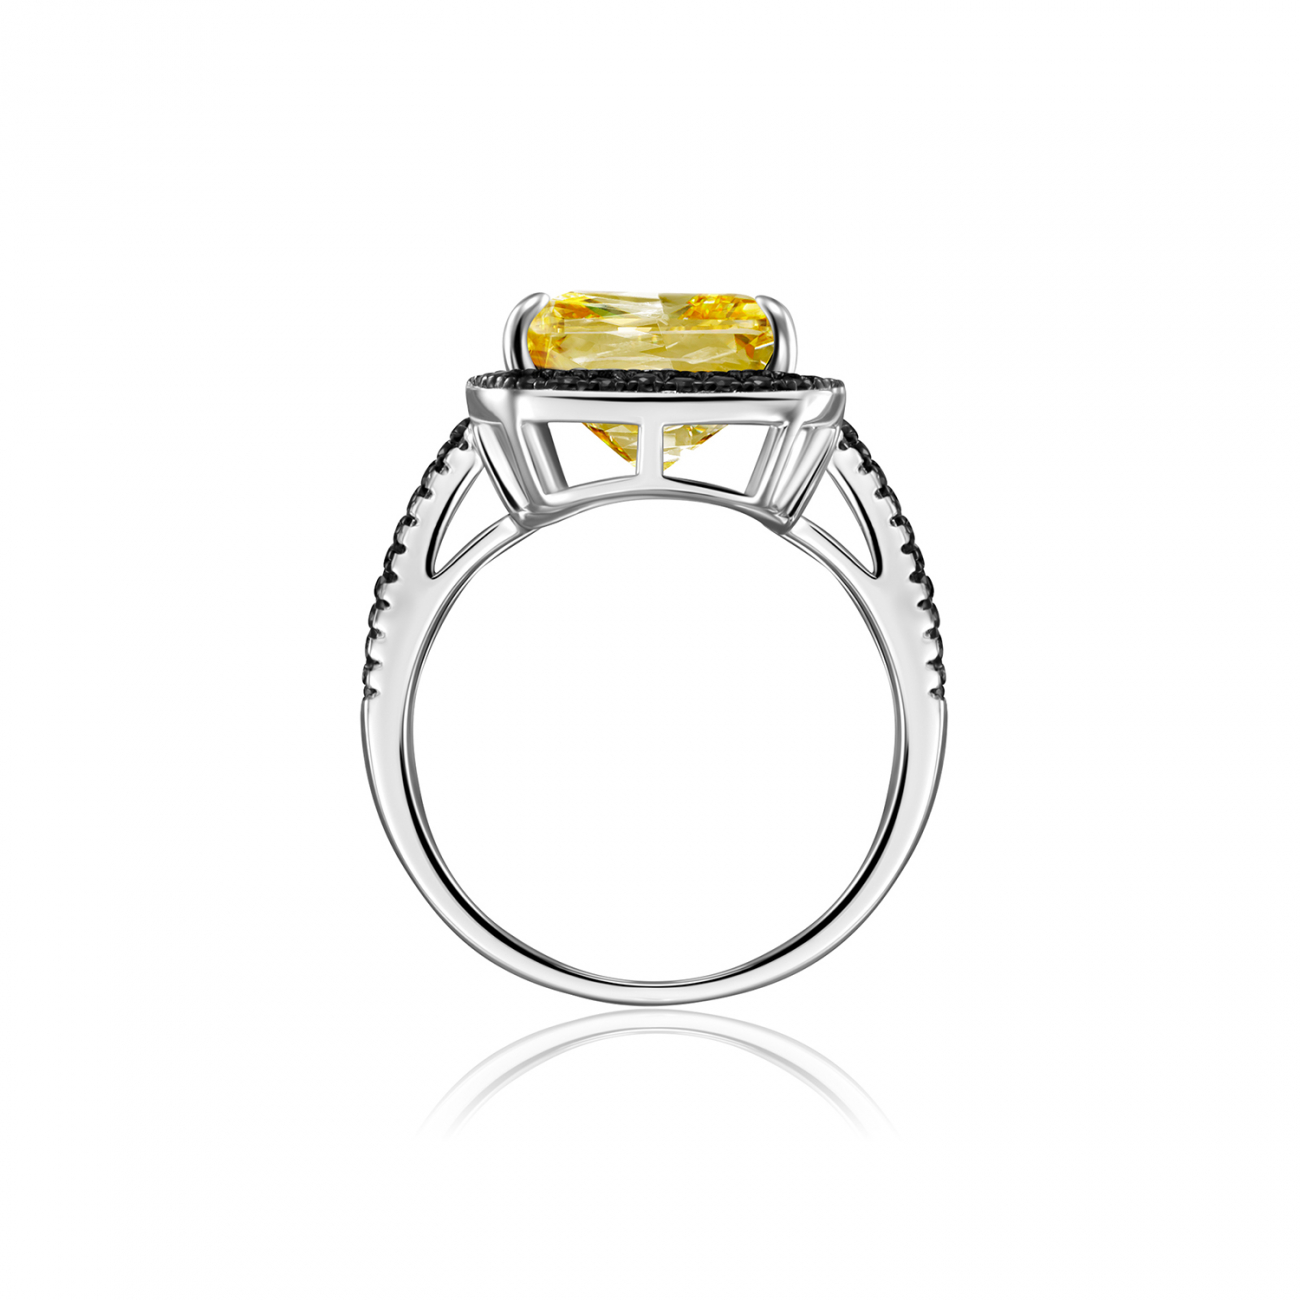 Серебряное кольцо 925 пробы желтое с черными фианитами